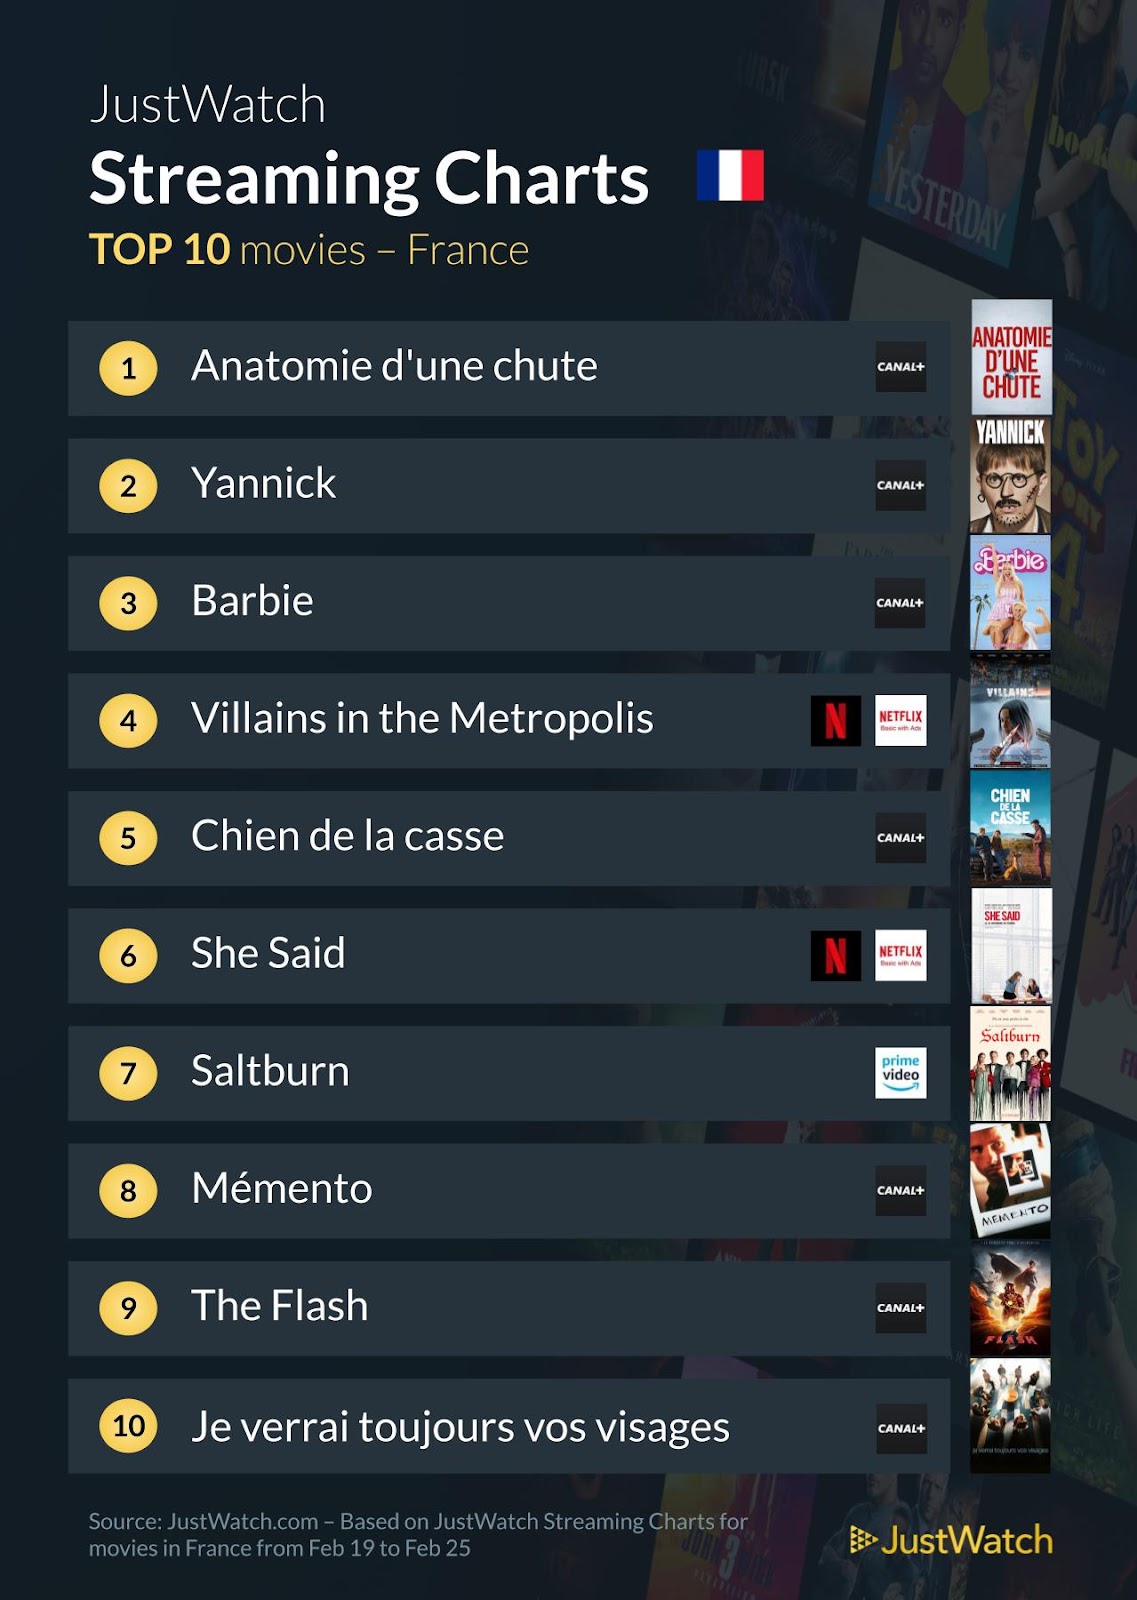 "Anatomie d'une chute", "Barbie", "Yannick"... : Le top 10 des films et séries les plus populaires de la semaine